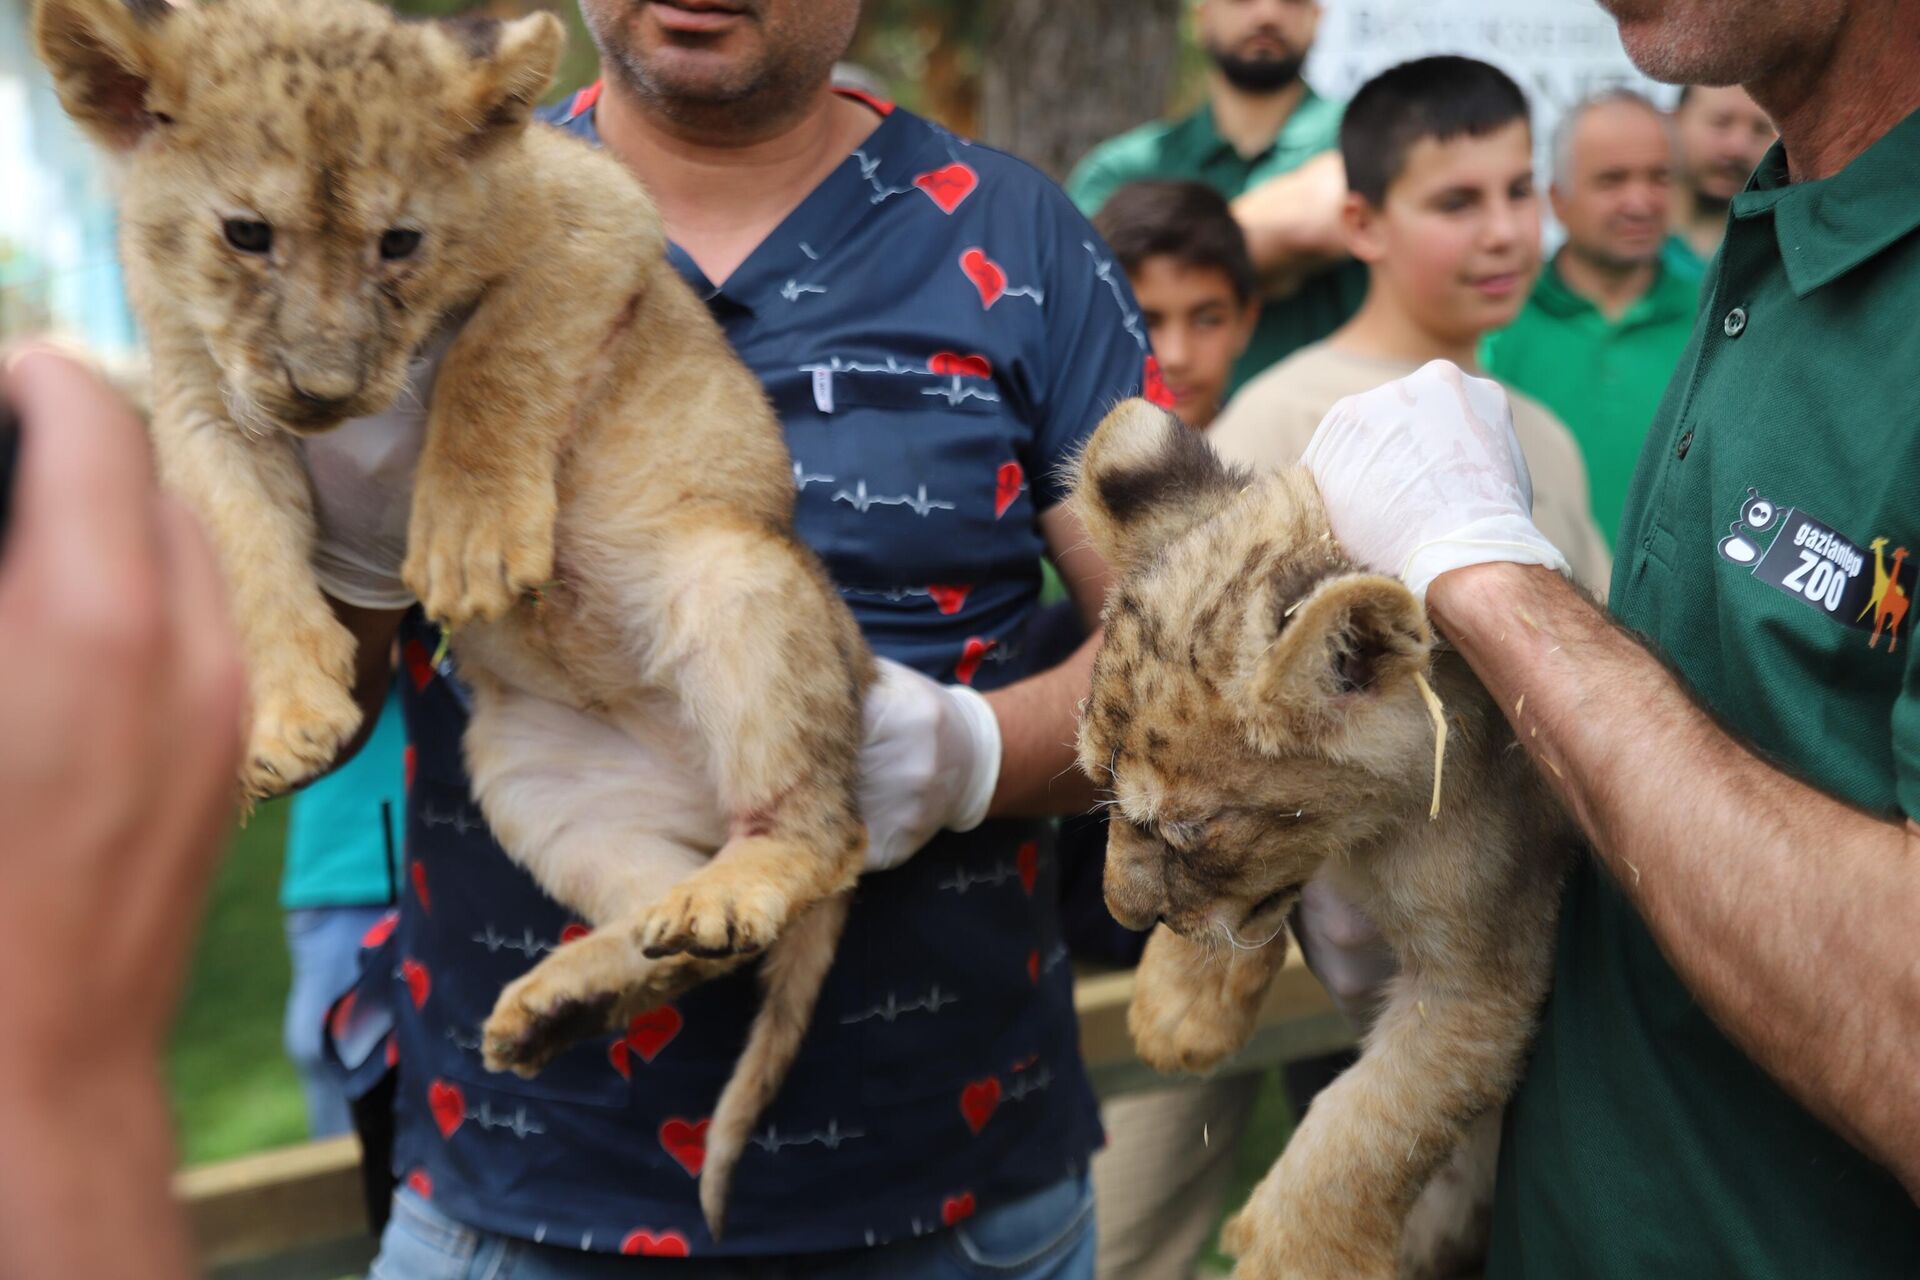 Sudan Cumhurbaşkanı tarafından 4 yıl önce Cumhurbaşkanı Recep Tayyip Erdoğan'a hediye edilen ve Gaziantep Hayvanat Bahçesinde bulunan 4 aslandan biri dördüz doğurdu. - Sputnik Türkiye, 1920, 31.05.2023